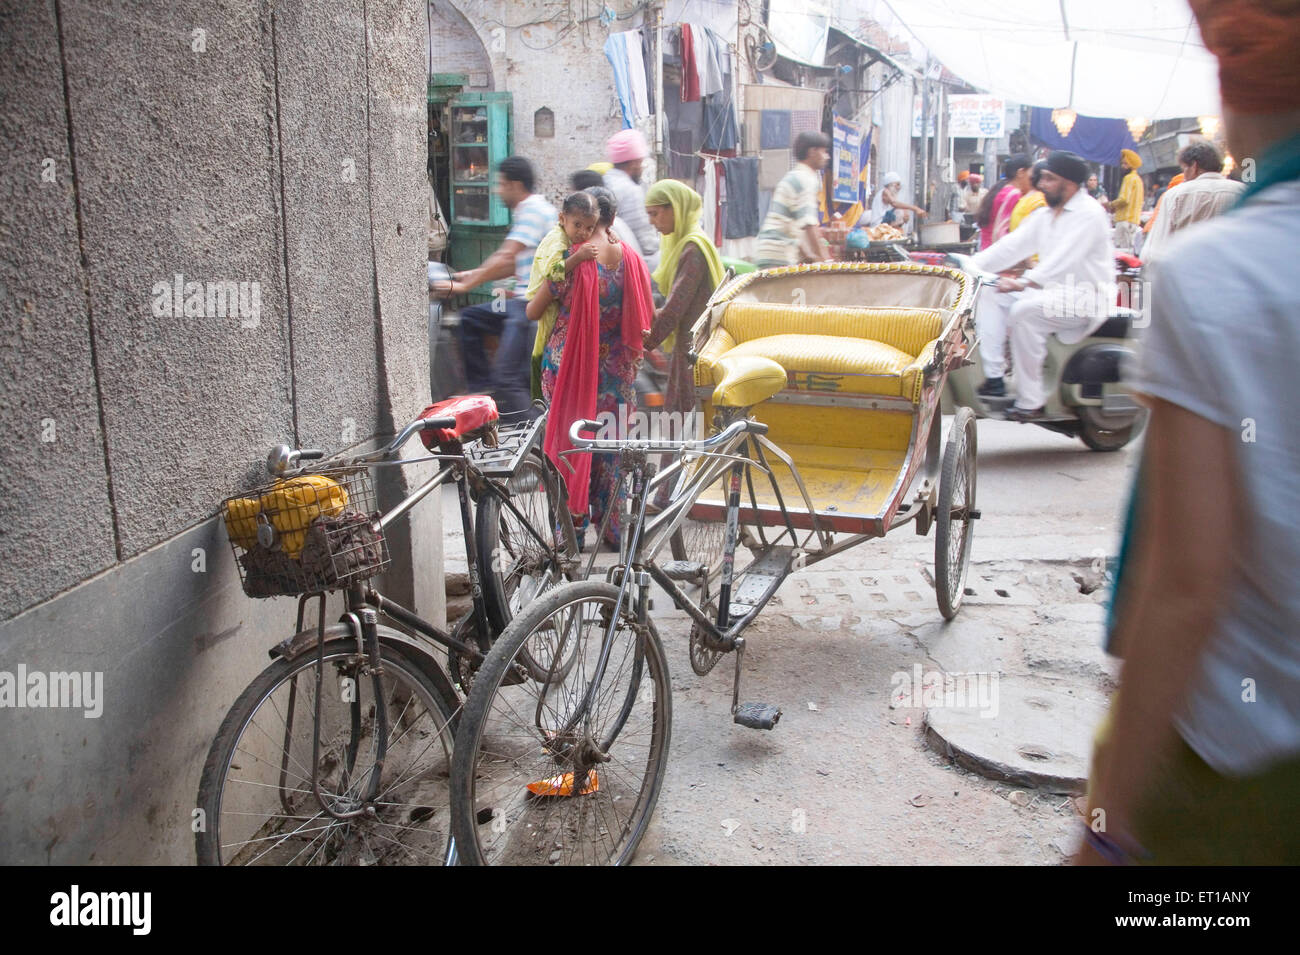 Straßenszene Fahrrad- und Zyklus Rickshaw geparkt in einer Gasse in der Nähe von Swarn Mandir Golden Tempel; Amritsar; Punjab; Indien Stockfoto